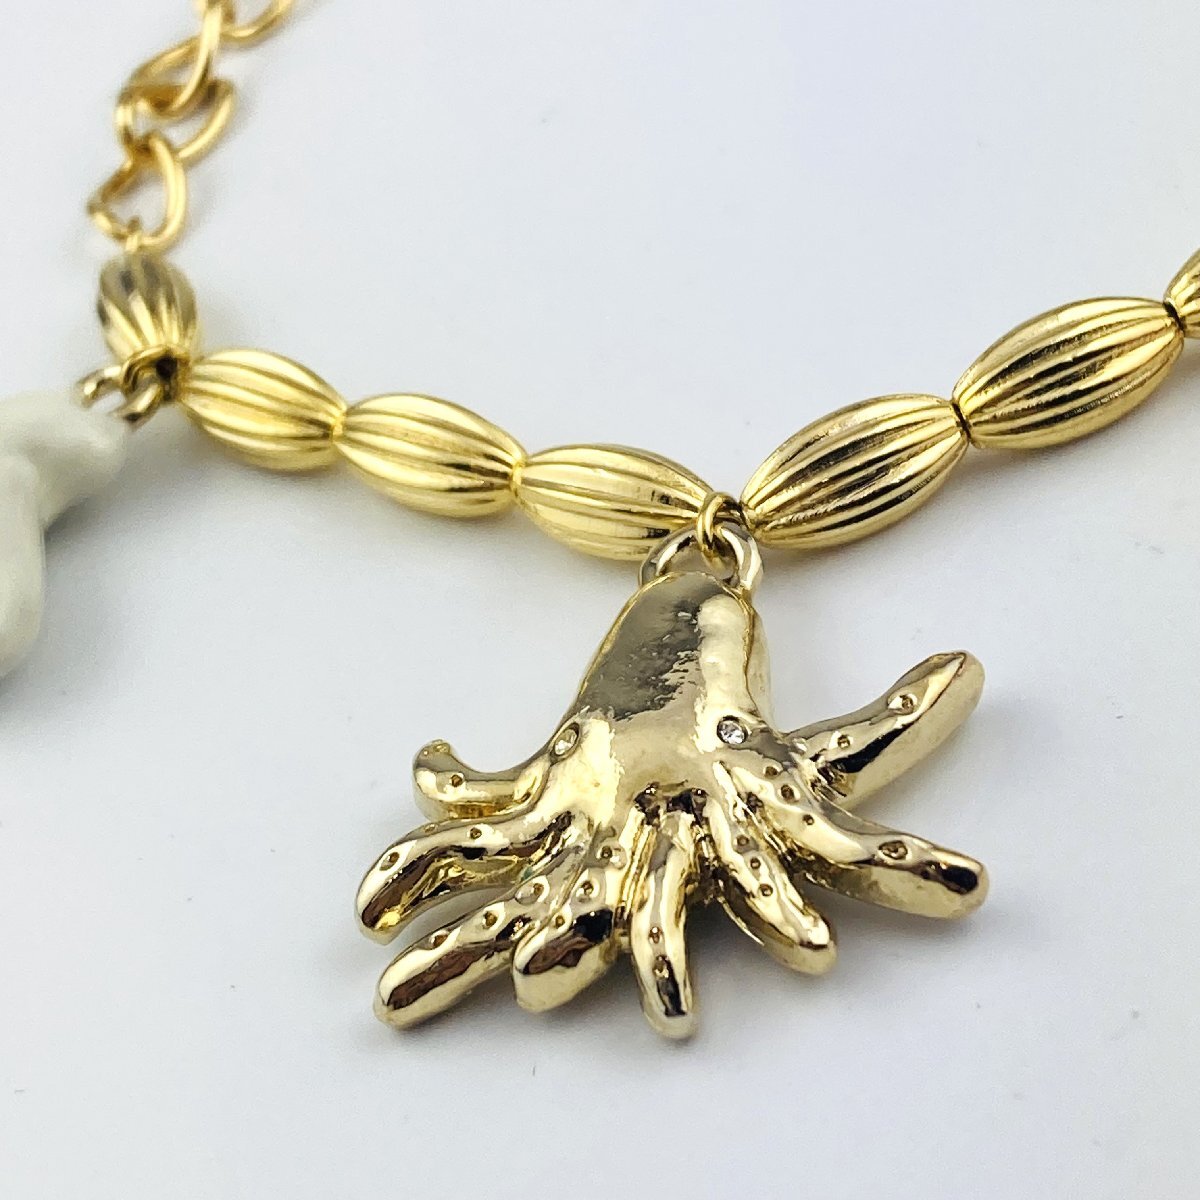 [77]TSUMORI CHISATO Tsumori Chisato charm bracele shell coral fish star octopus motif Gold color accessory 